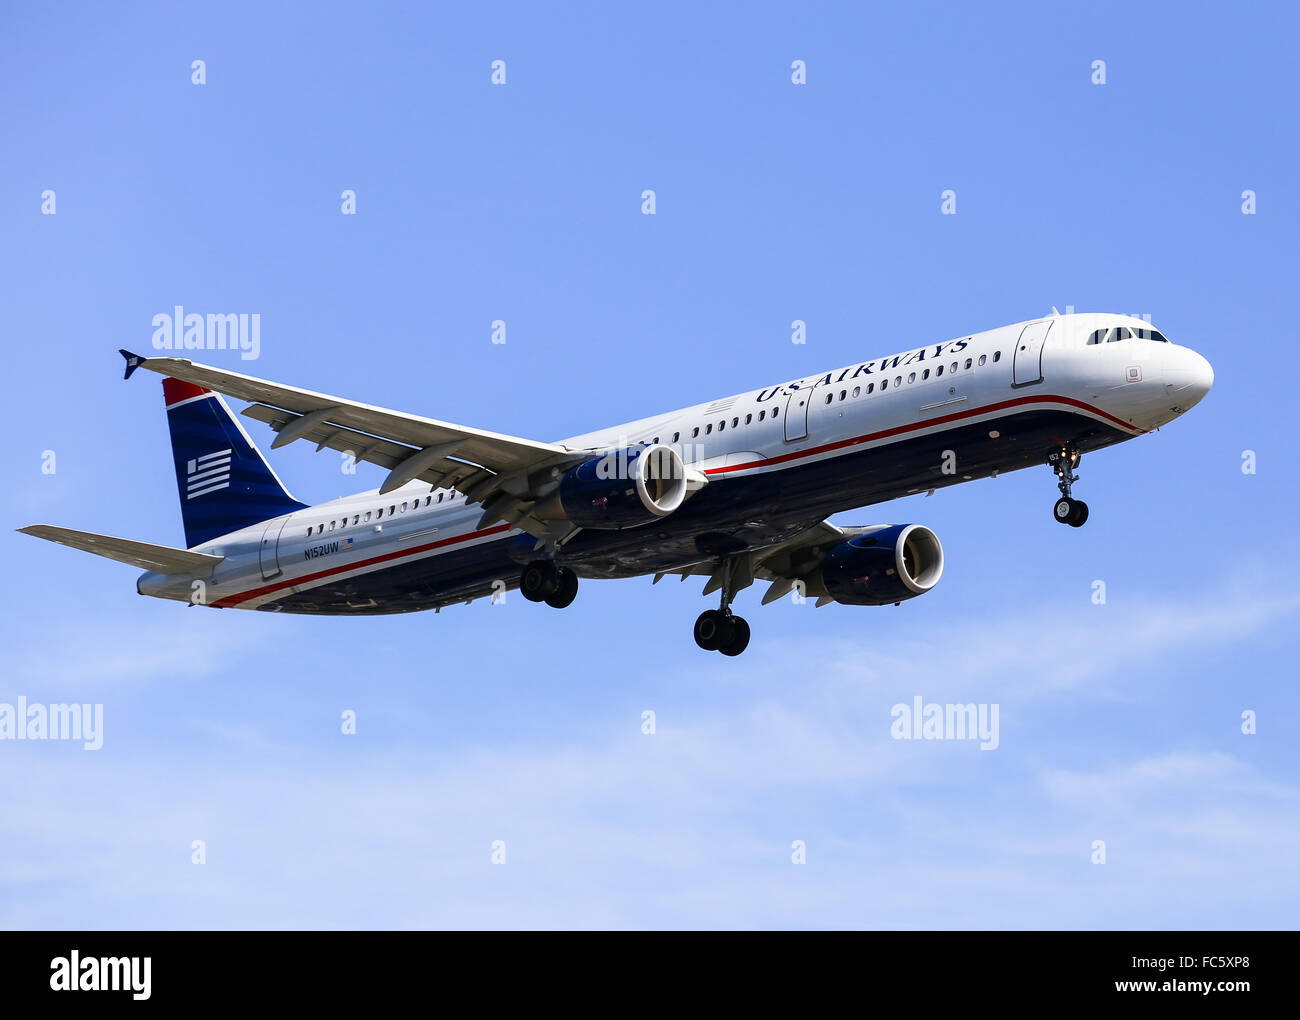 US Airways Stockfoto